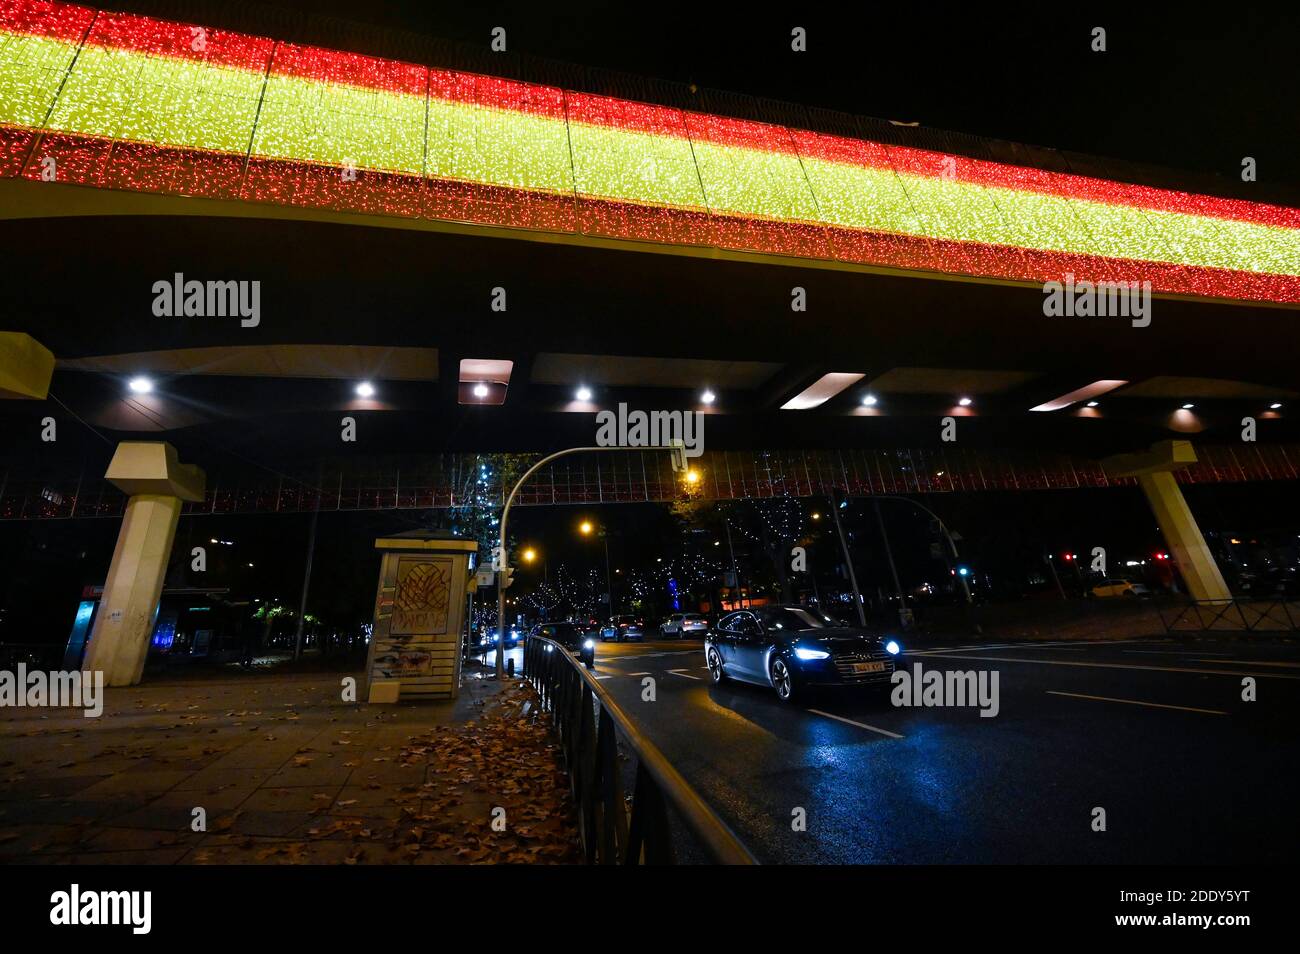 Madrid, Spanien. November 2020. Spanische Flagge Installation - Einschalten der traditionellen Weihafterts Beleuchtung in der Innenstadt. Madrid 11/26/2020 Quelle: dpa/Alamy Live News Stockfoto